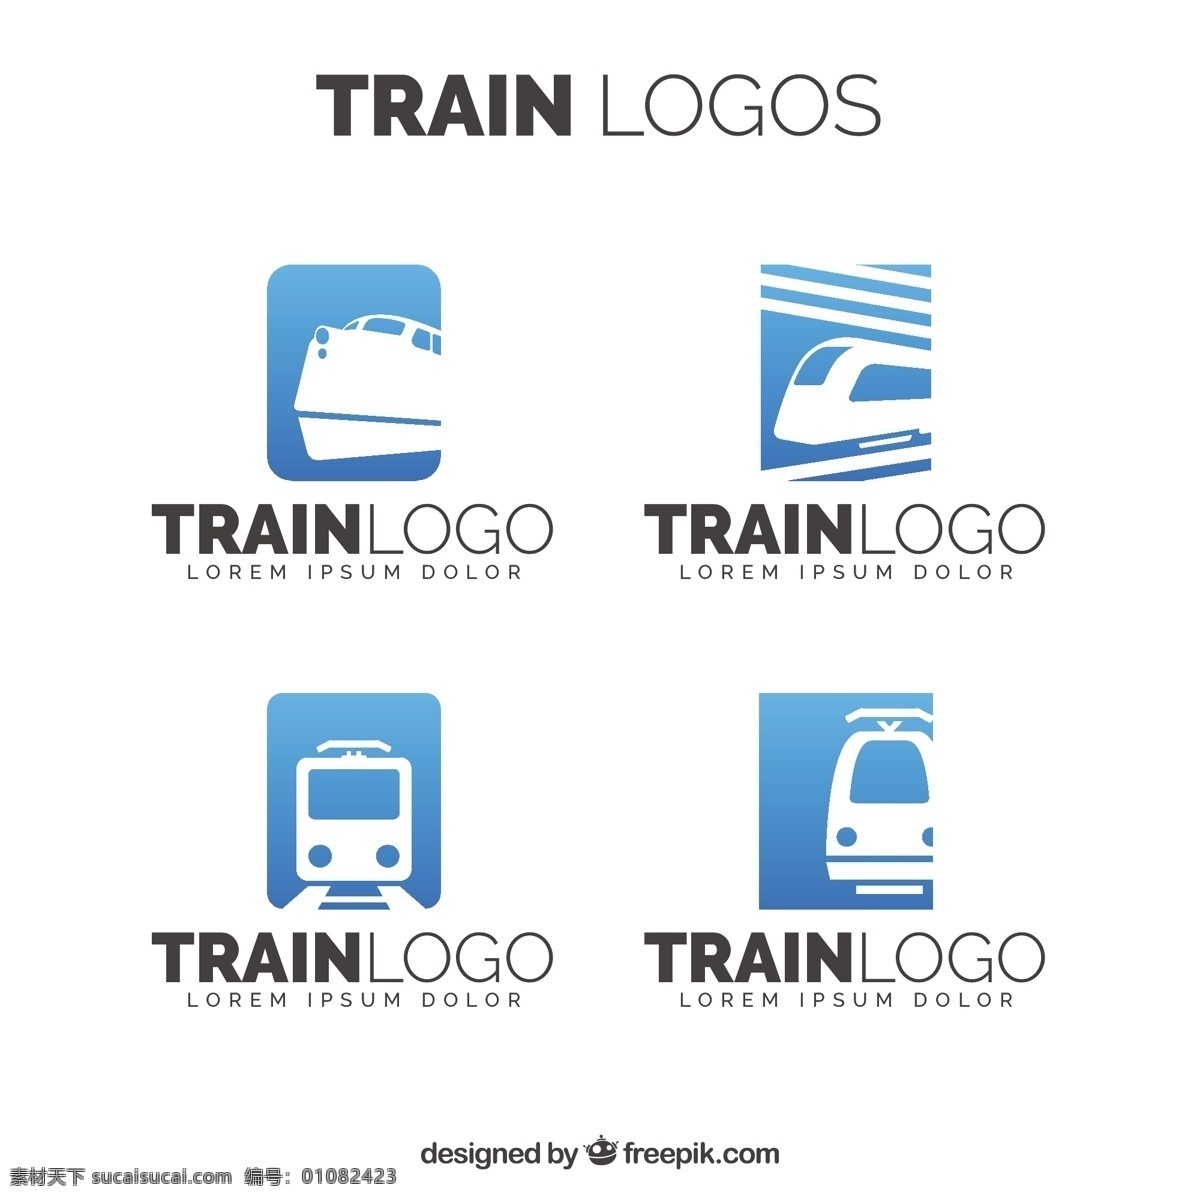 各种列车标志 标志 商务 旅游 线路 标签 标识 火车 企业 公司 企业形象 品牌 现代 速度 运输 机器 符号 身份 旅游标识 旅行